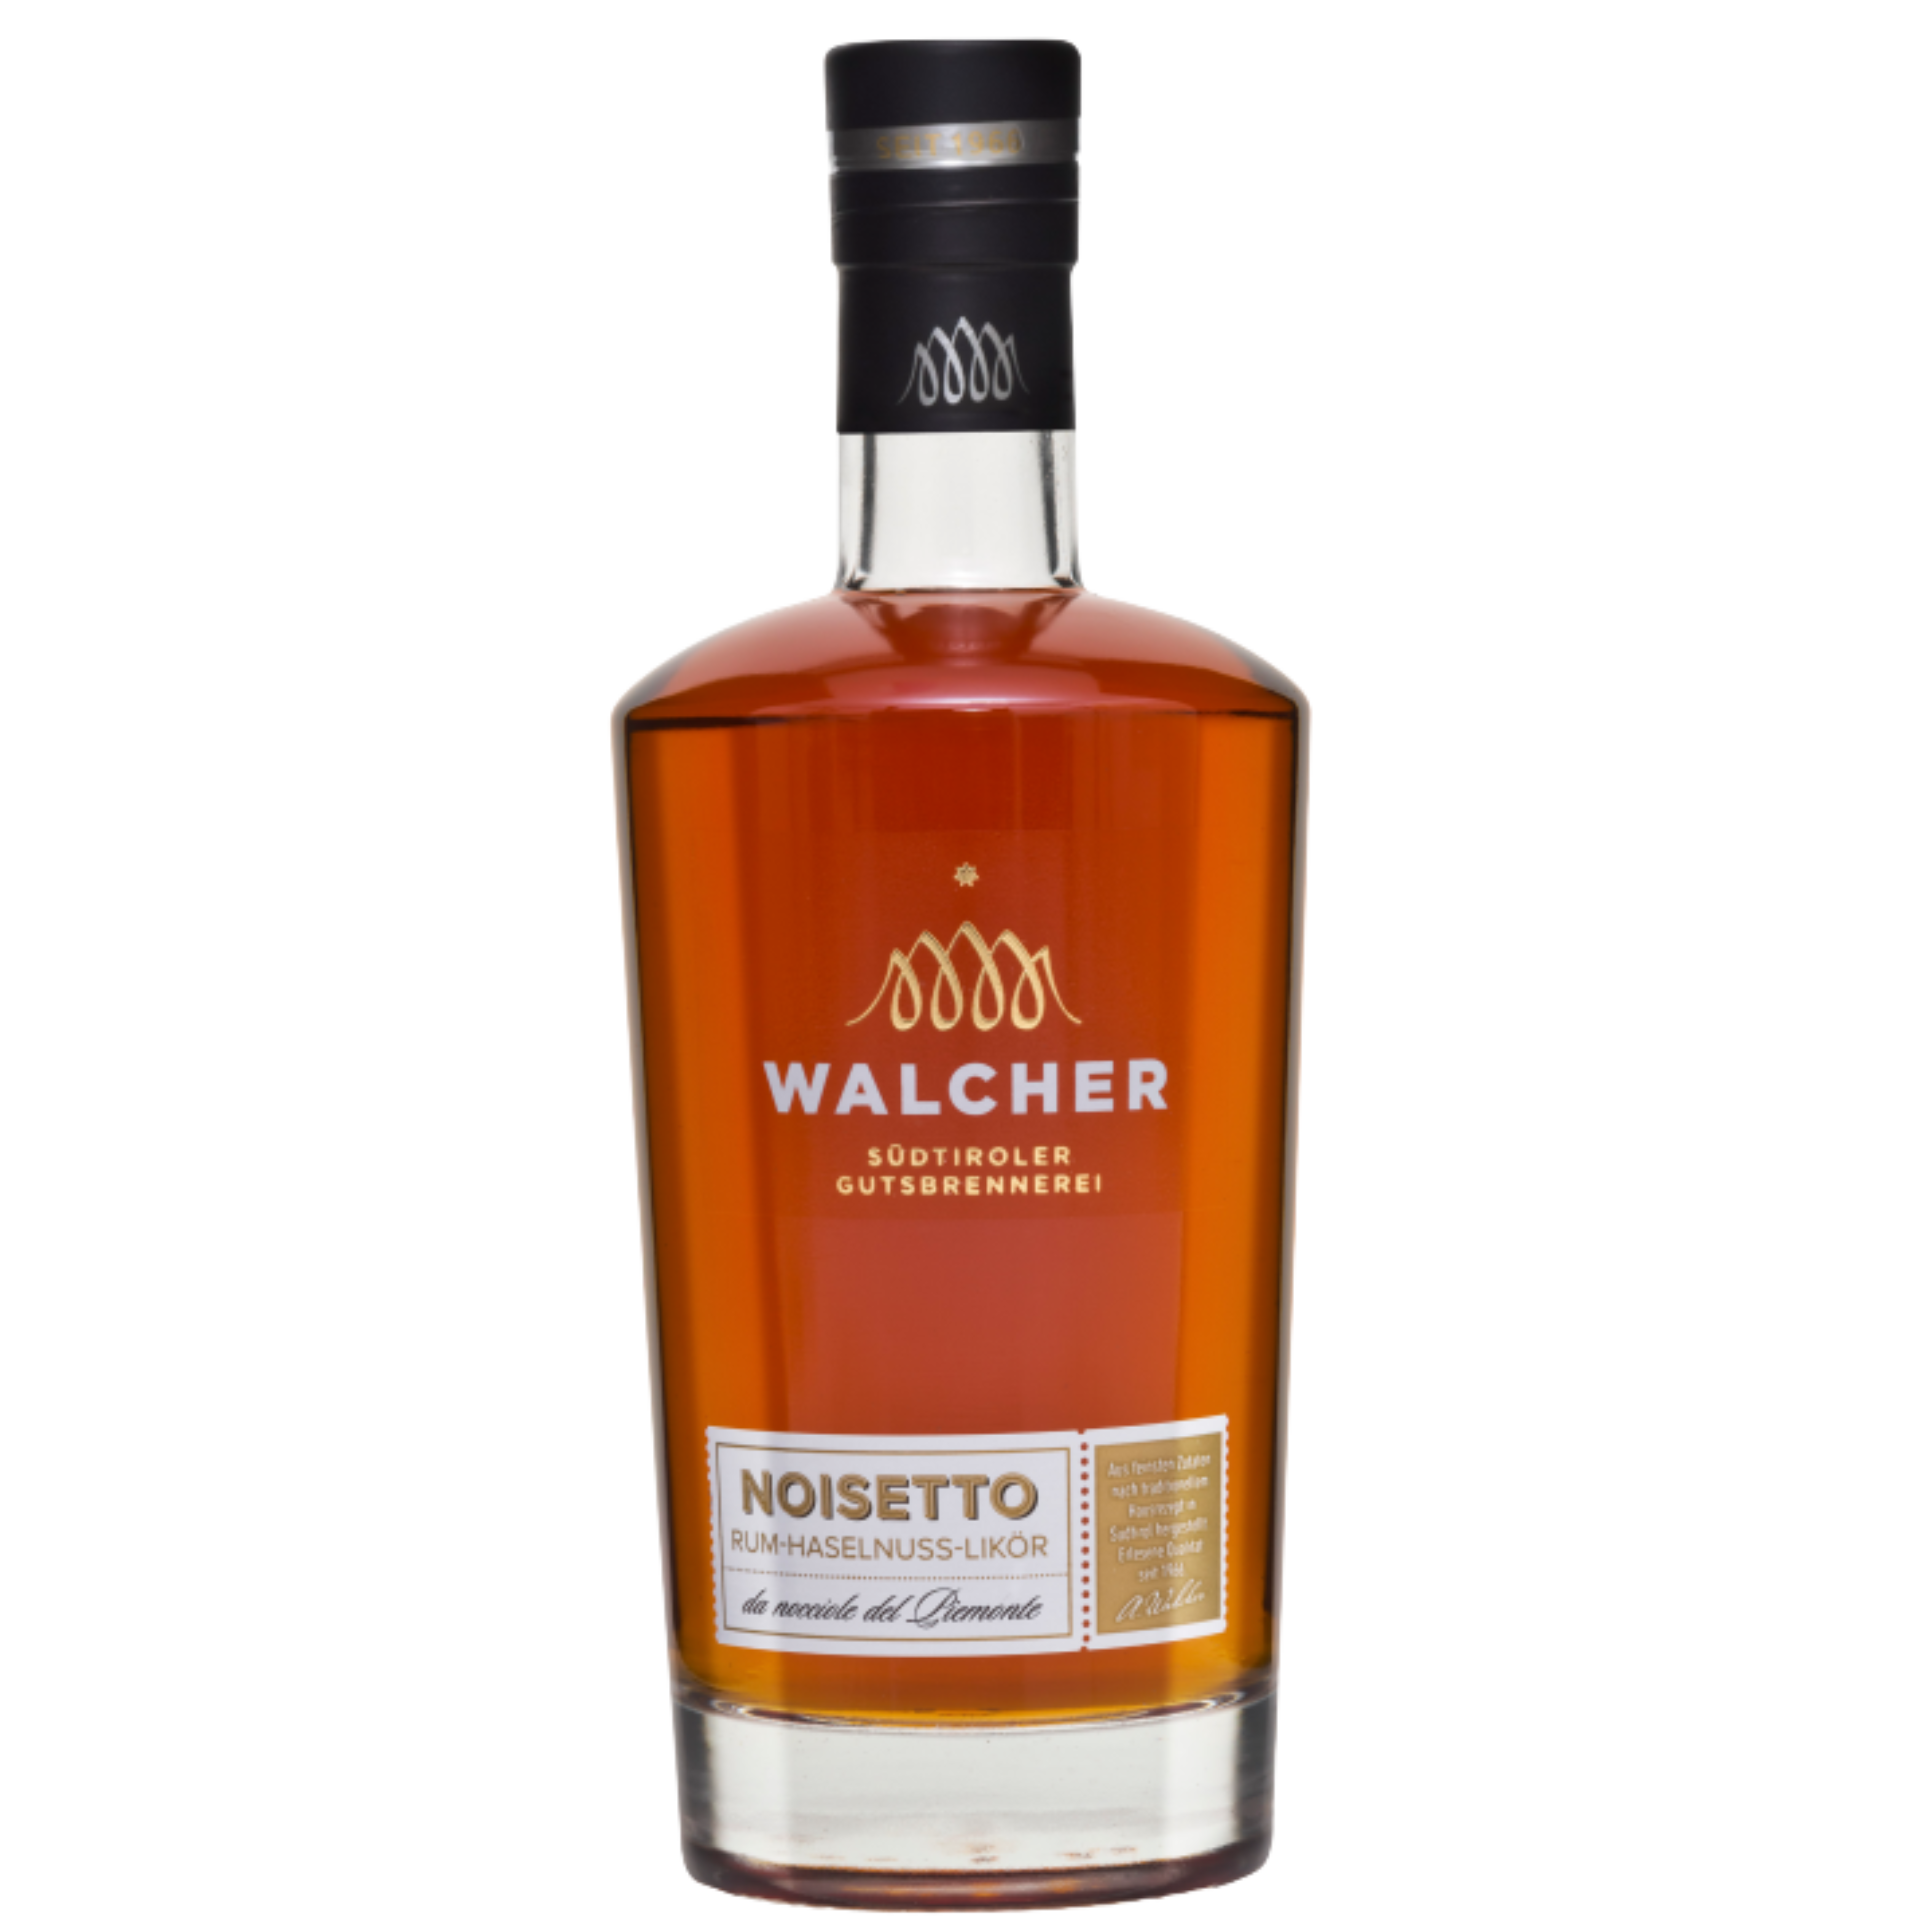 Walcher Noisetto Rum - Haselnusslikör 21% 0,7l